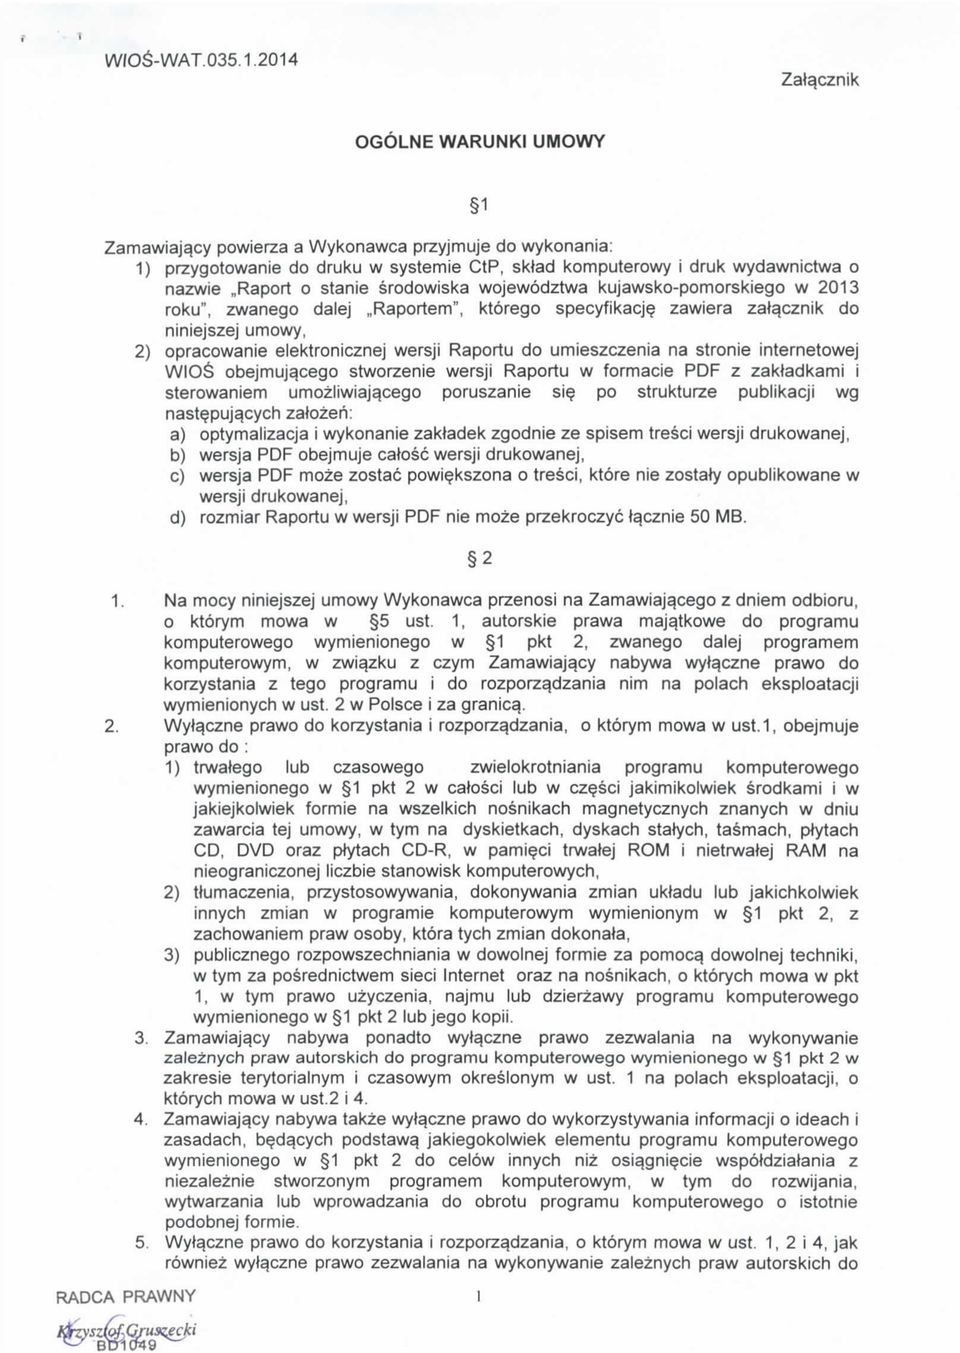 srodowiska wojewodztwa kujawsko-pomorskiego w 2013 roku", zwanego dalej,,raportem", ktorego specyfikacje?